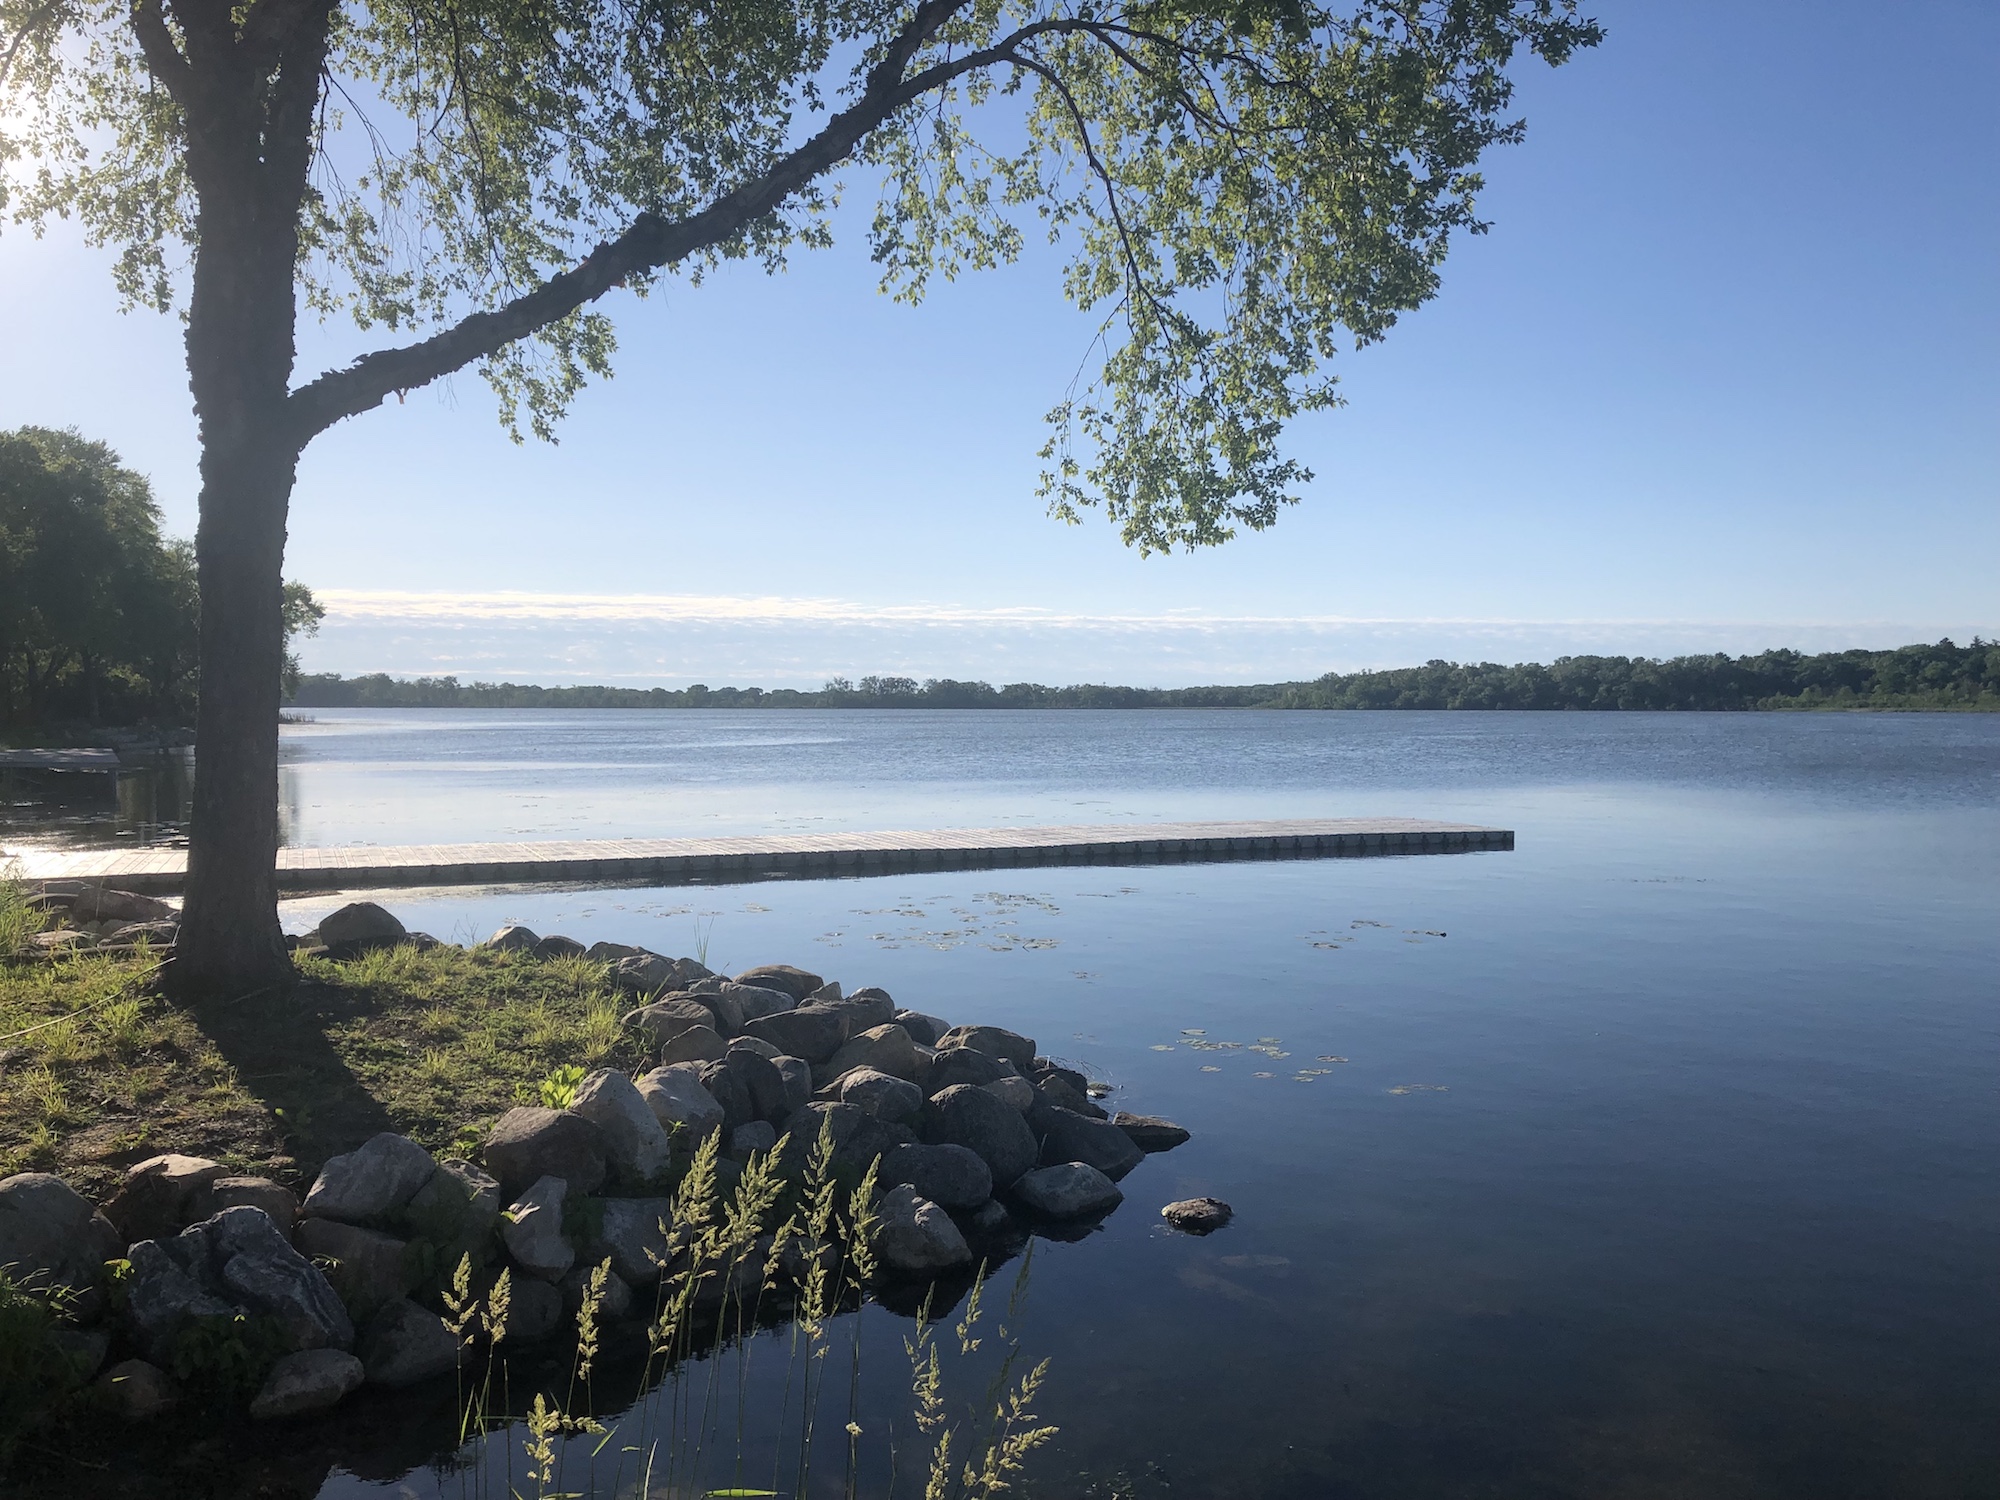 Lake Wingra on June 10, 2019.